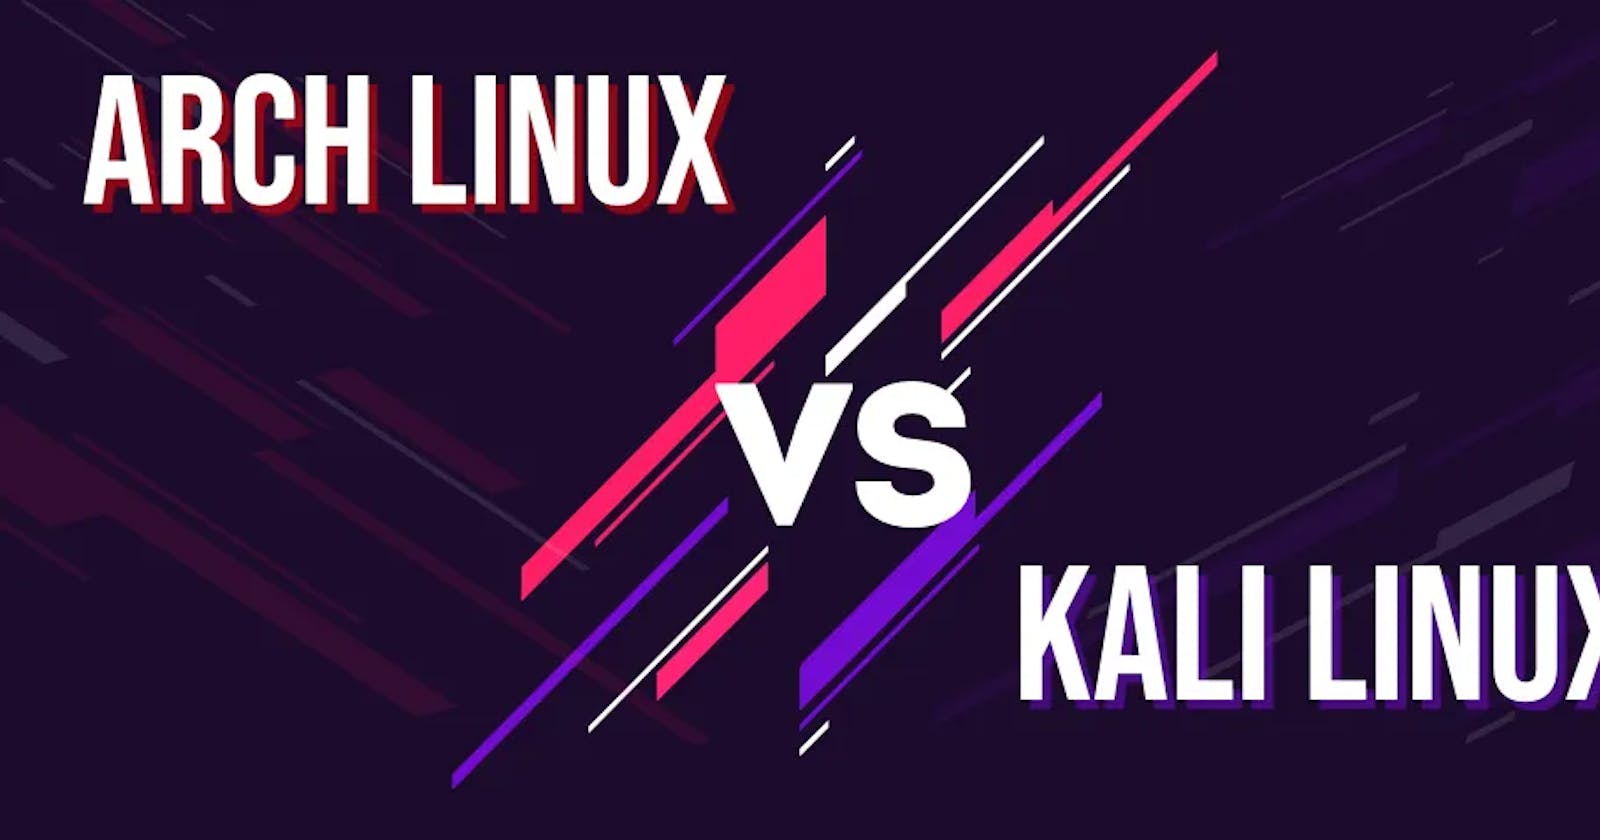 BlackArch vs Kali Linux: A Comprehensive Comparison